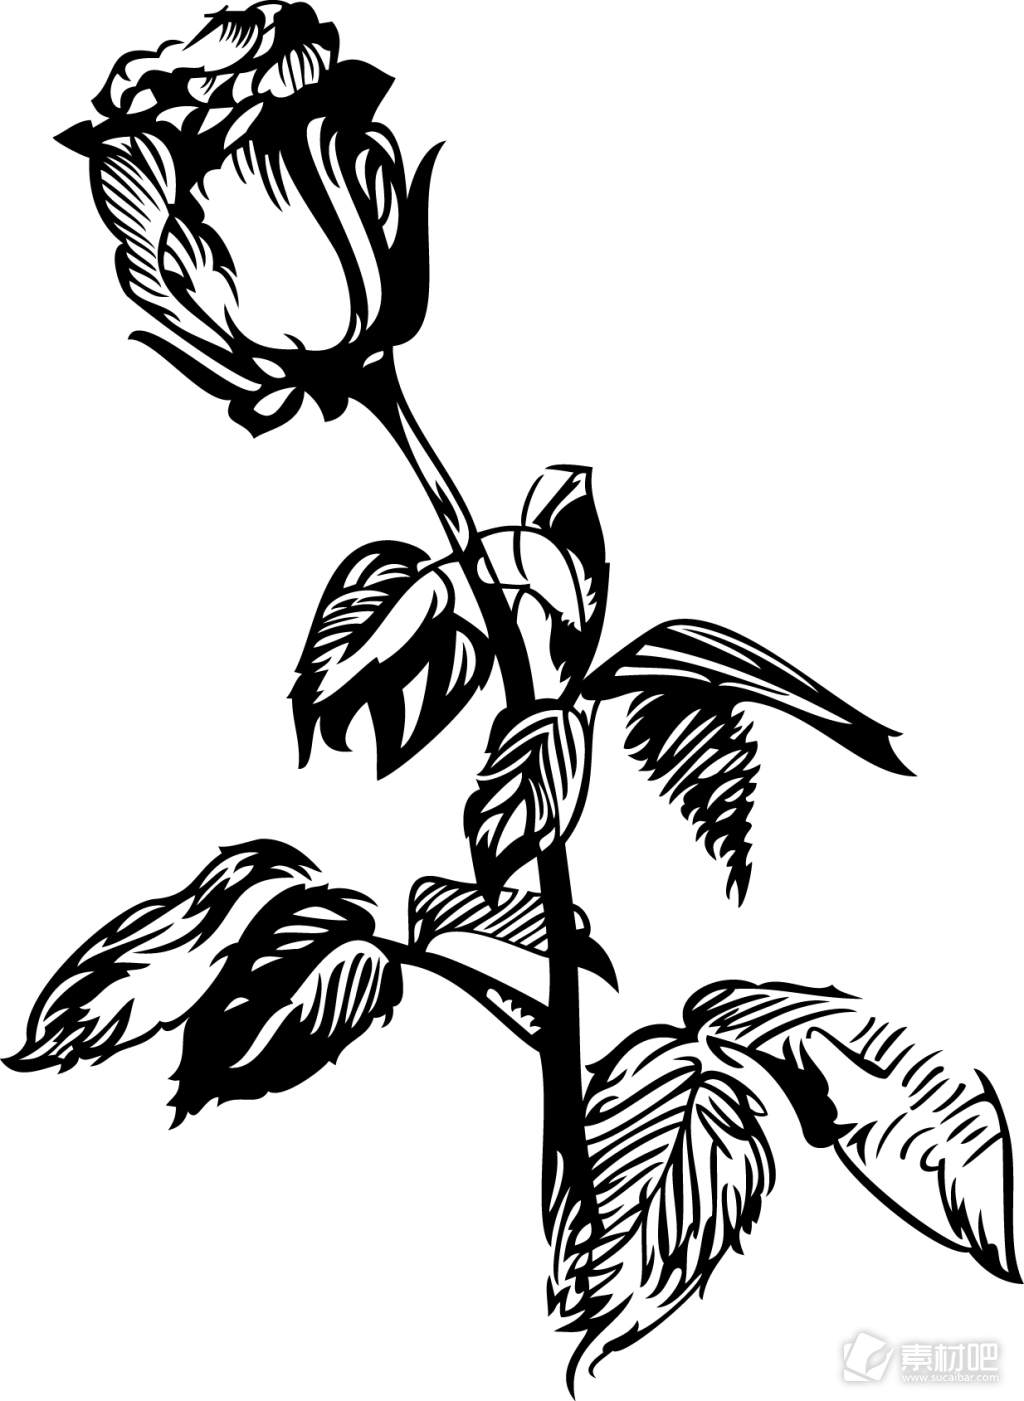 黑白手绘植物玫瑰花